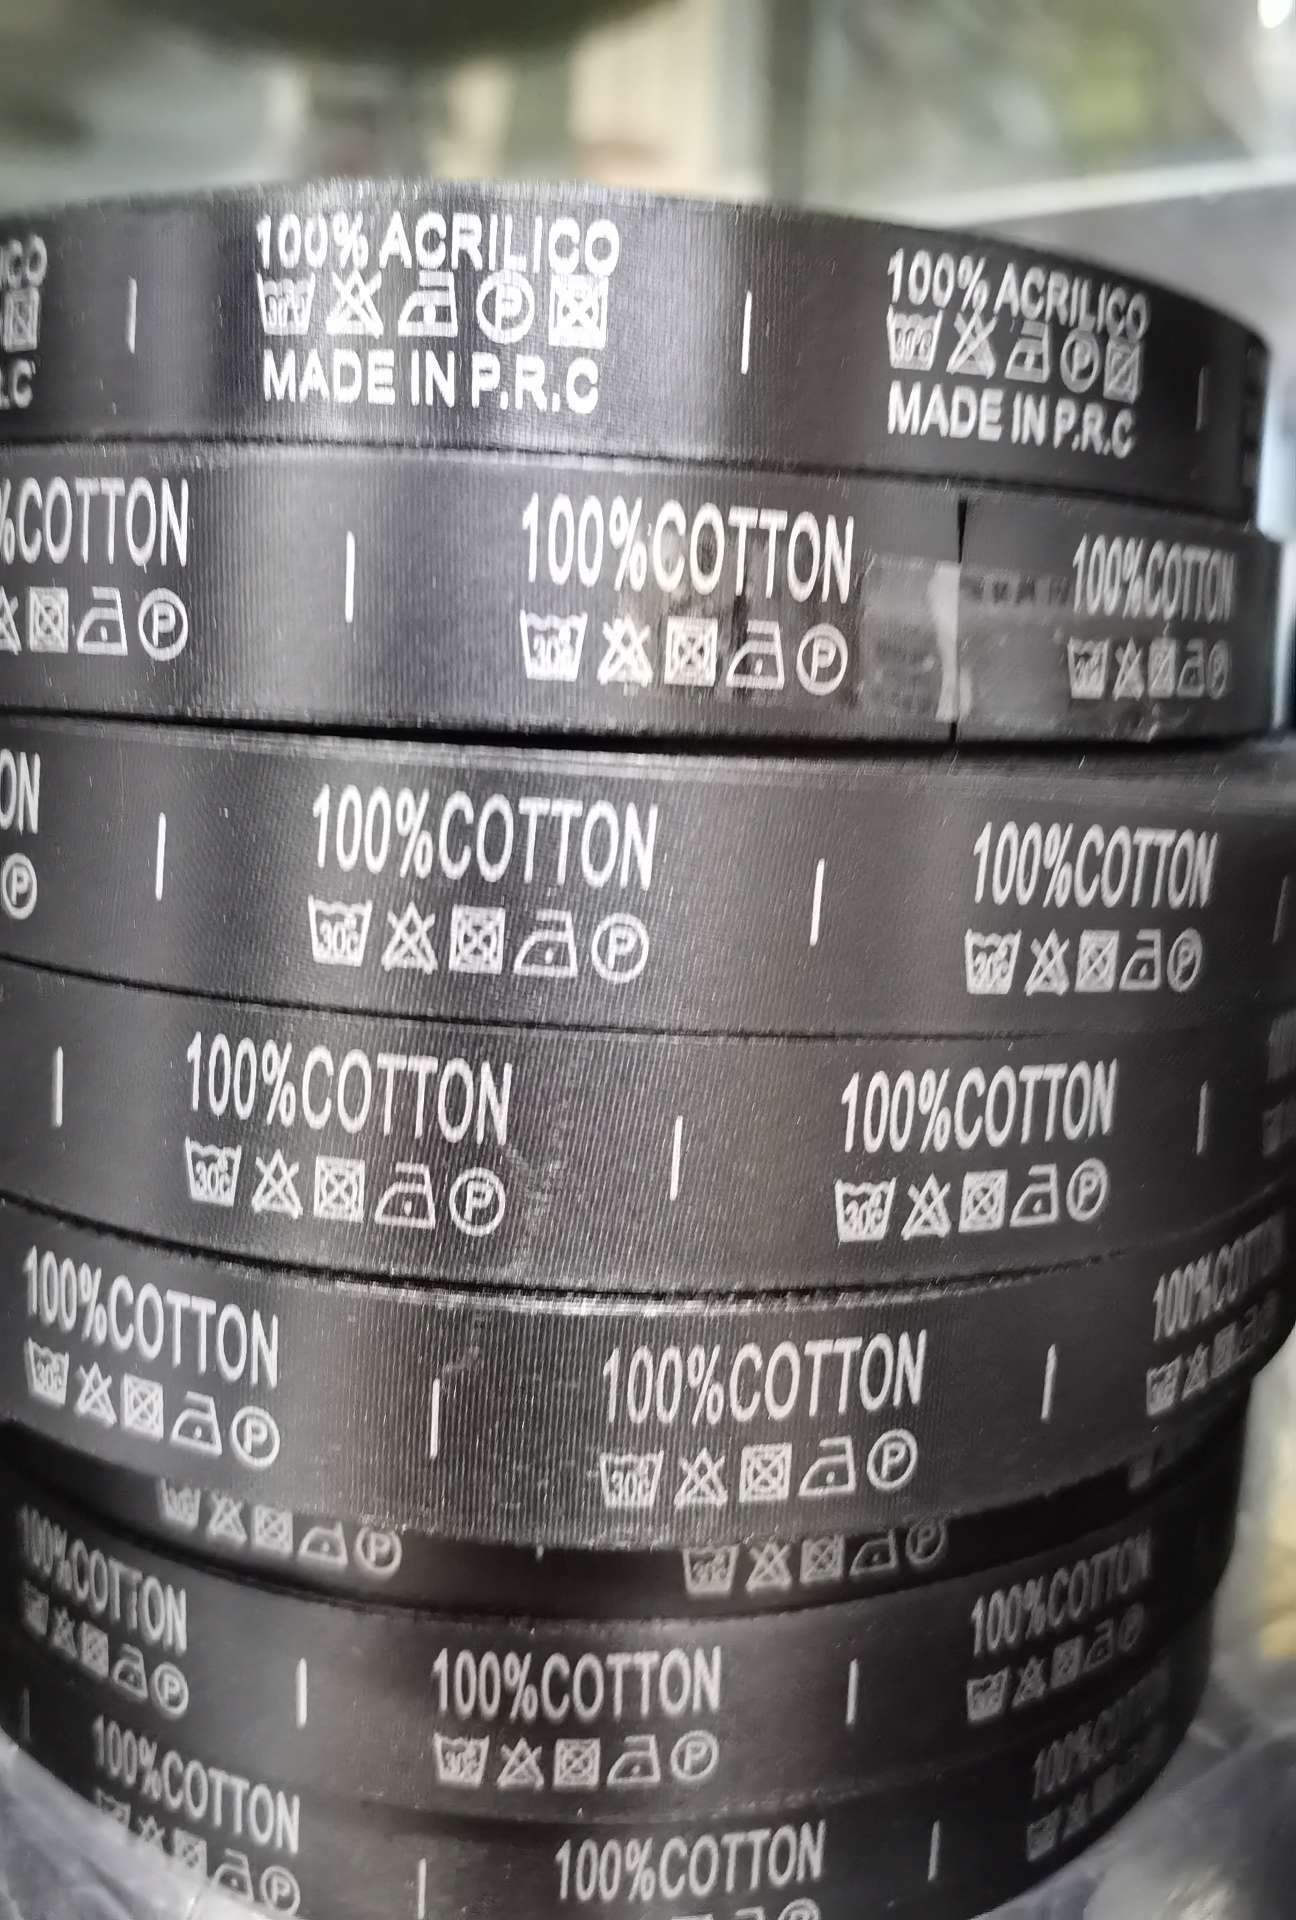 黑缎100%COTTON
商标。水洗标。成份标